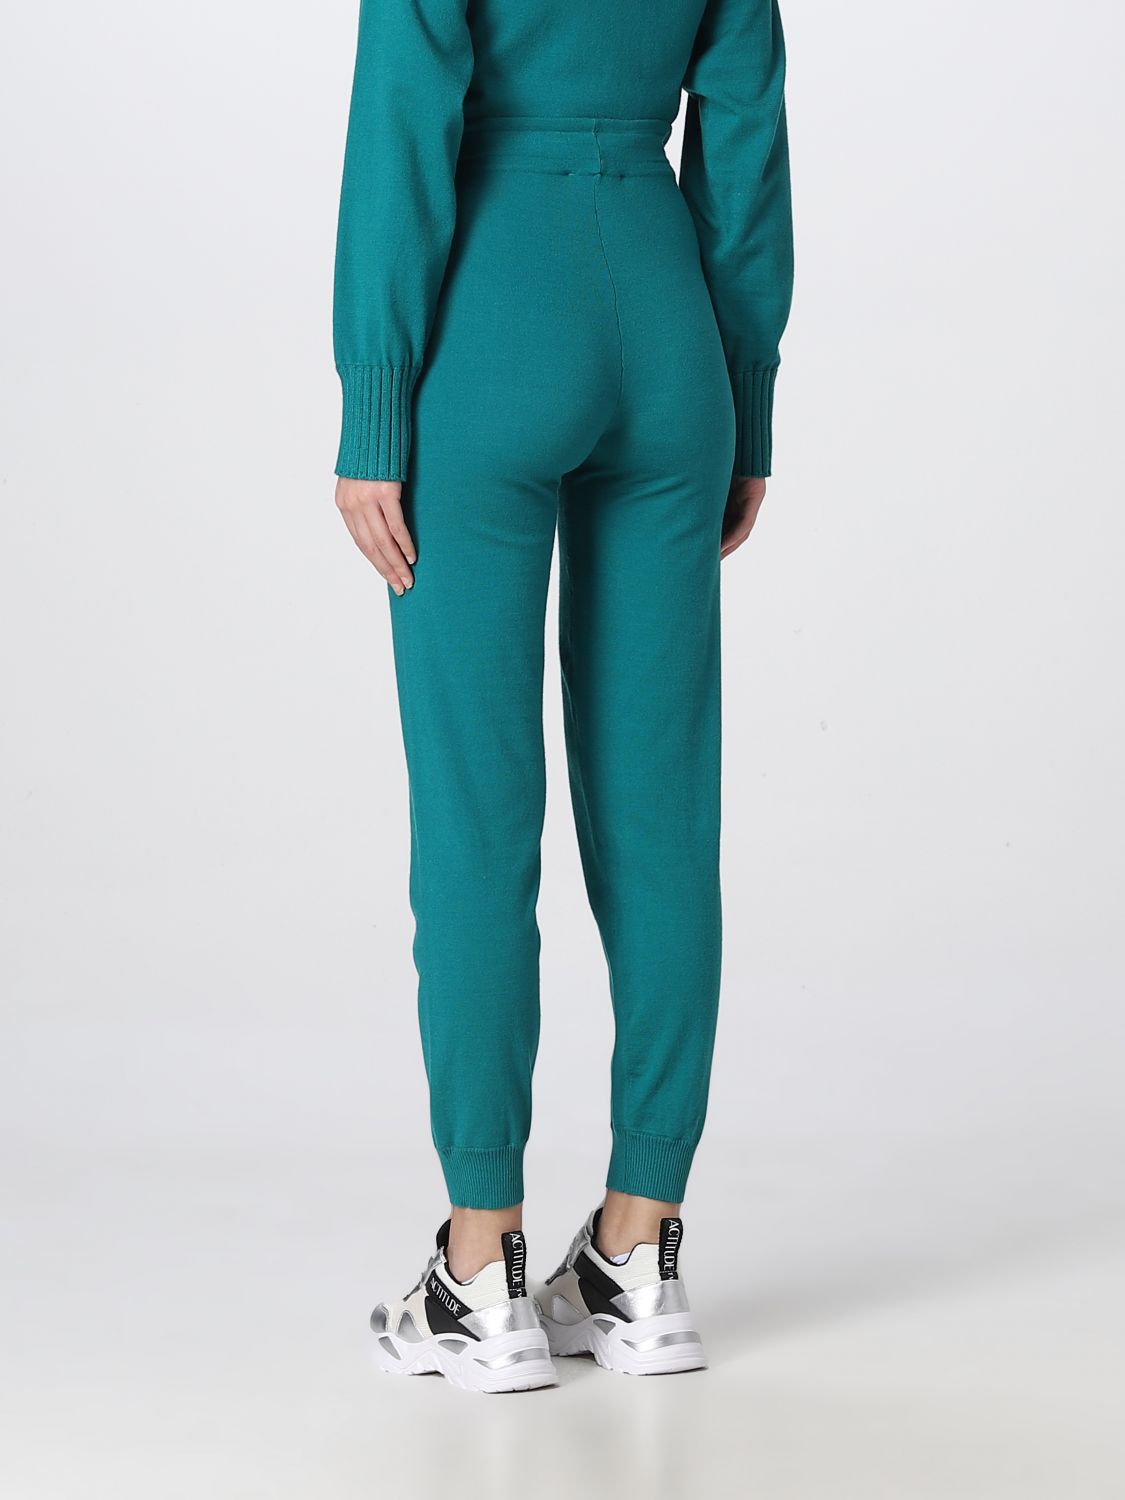 Pantalón Actitude Twinset: Pantalón Actitude Twinset para mujer verde 3